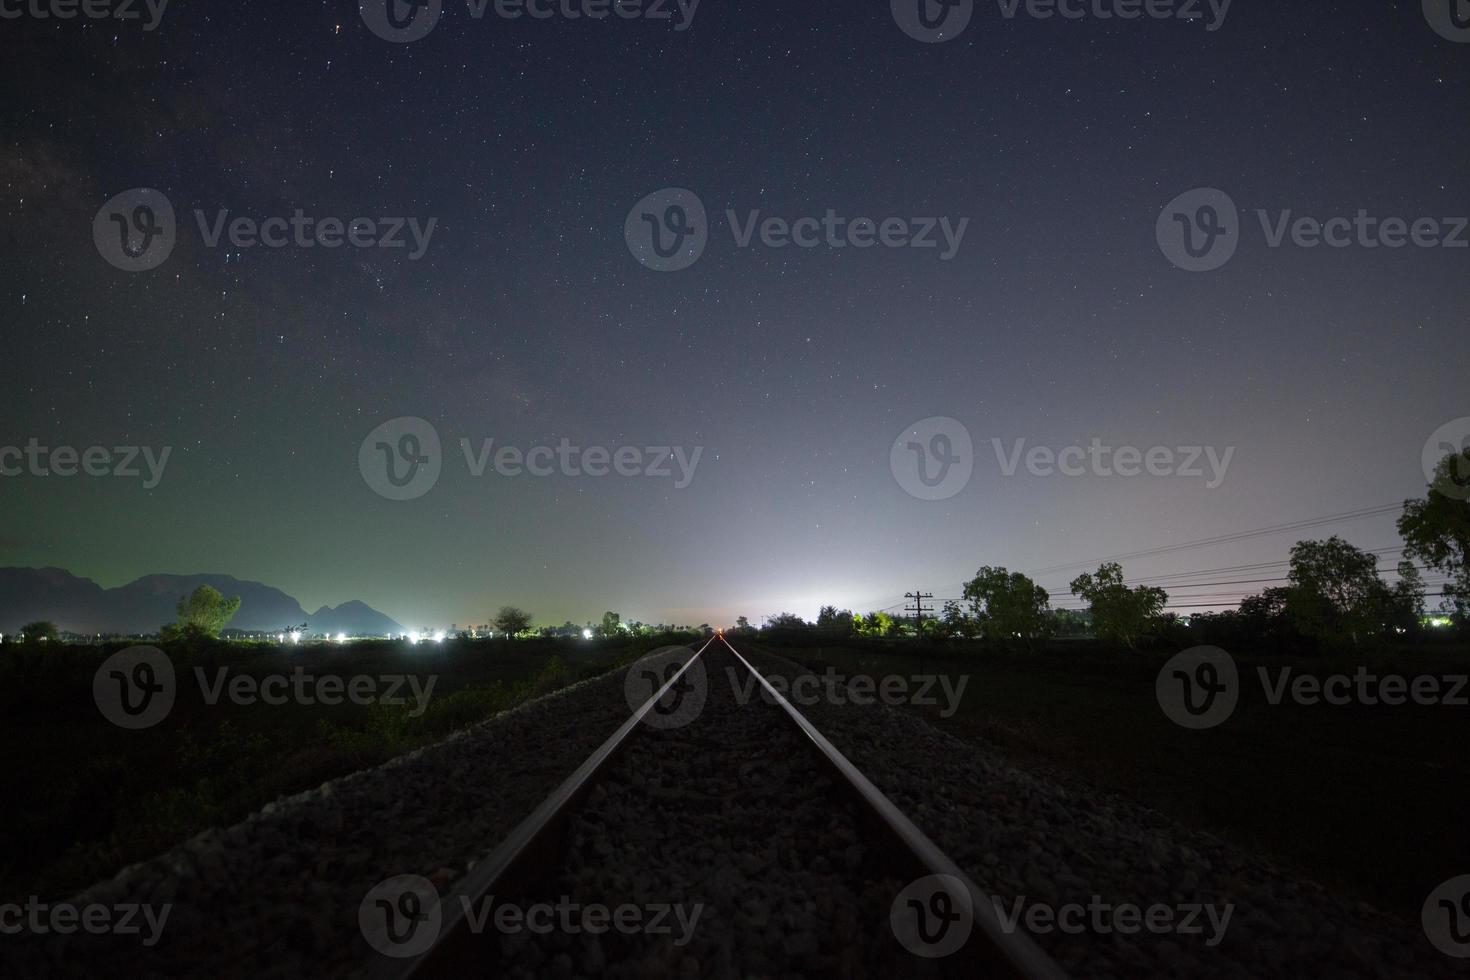 voie ferrée et ciel étoilé photo